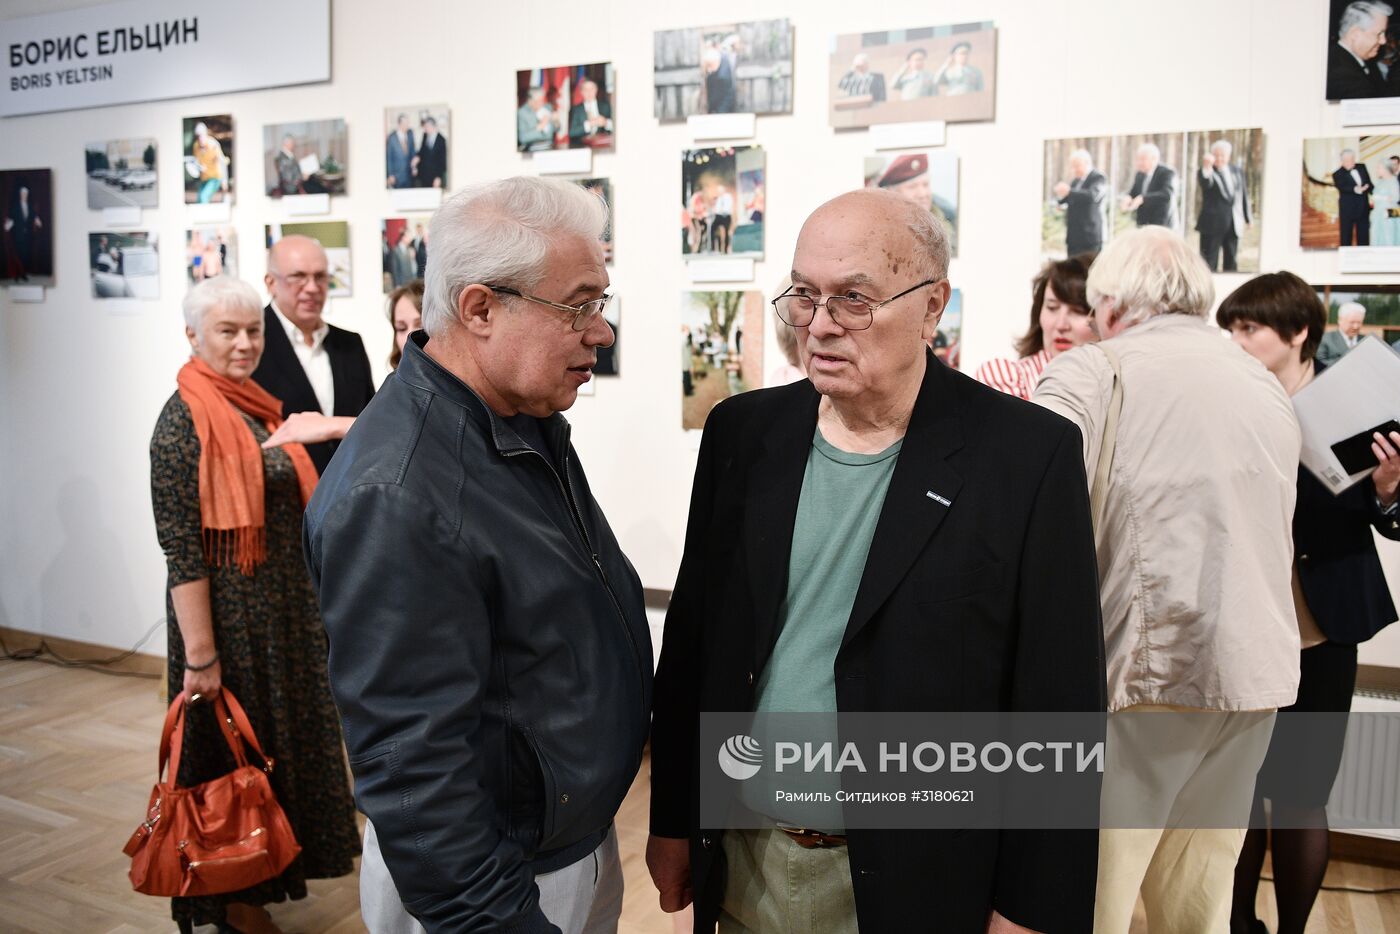 Персональная выставка фотографа Дмитрия Донского "Я снимал параллельные миры"